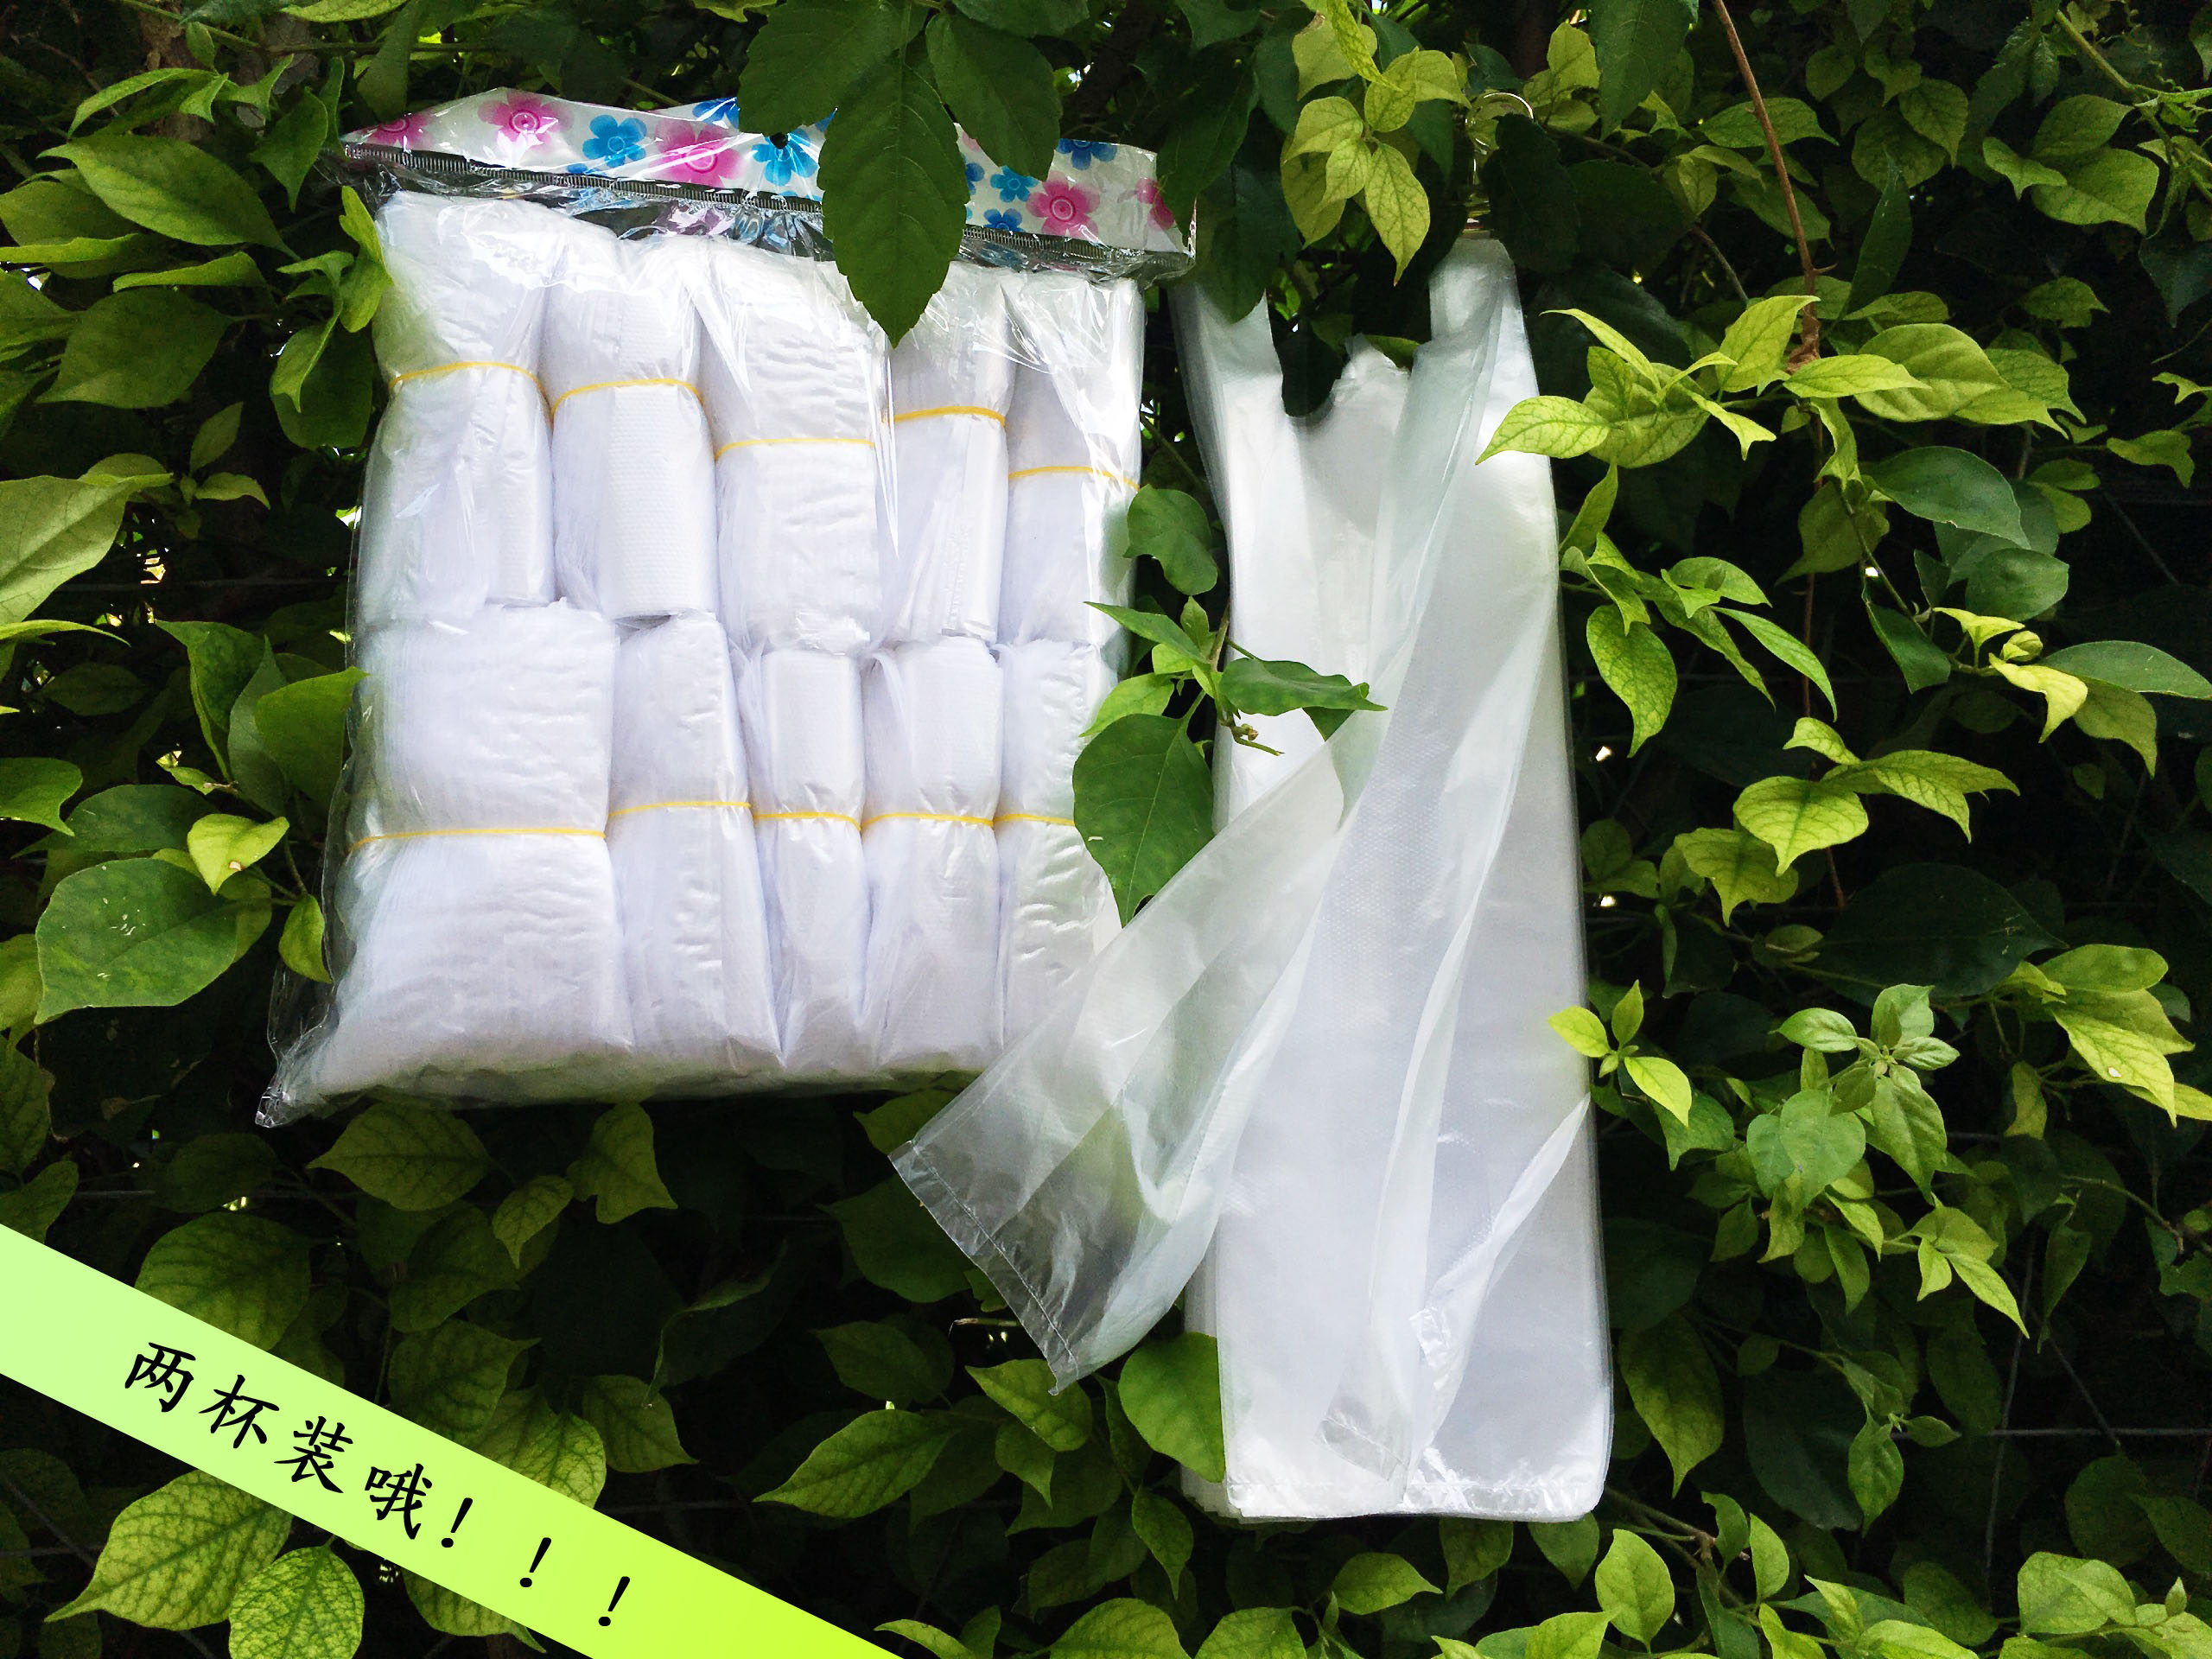 广东优质奶茶打包袋批发  奶茶打包袋厂家直销  派明塑料制品厂